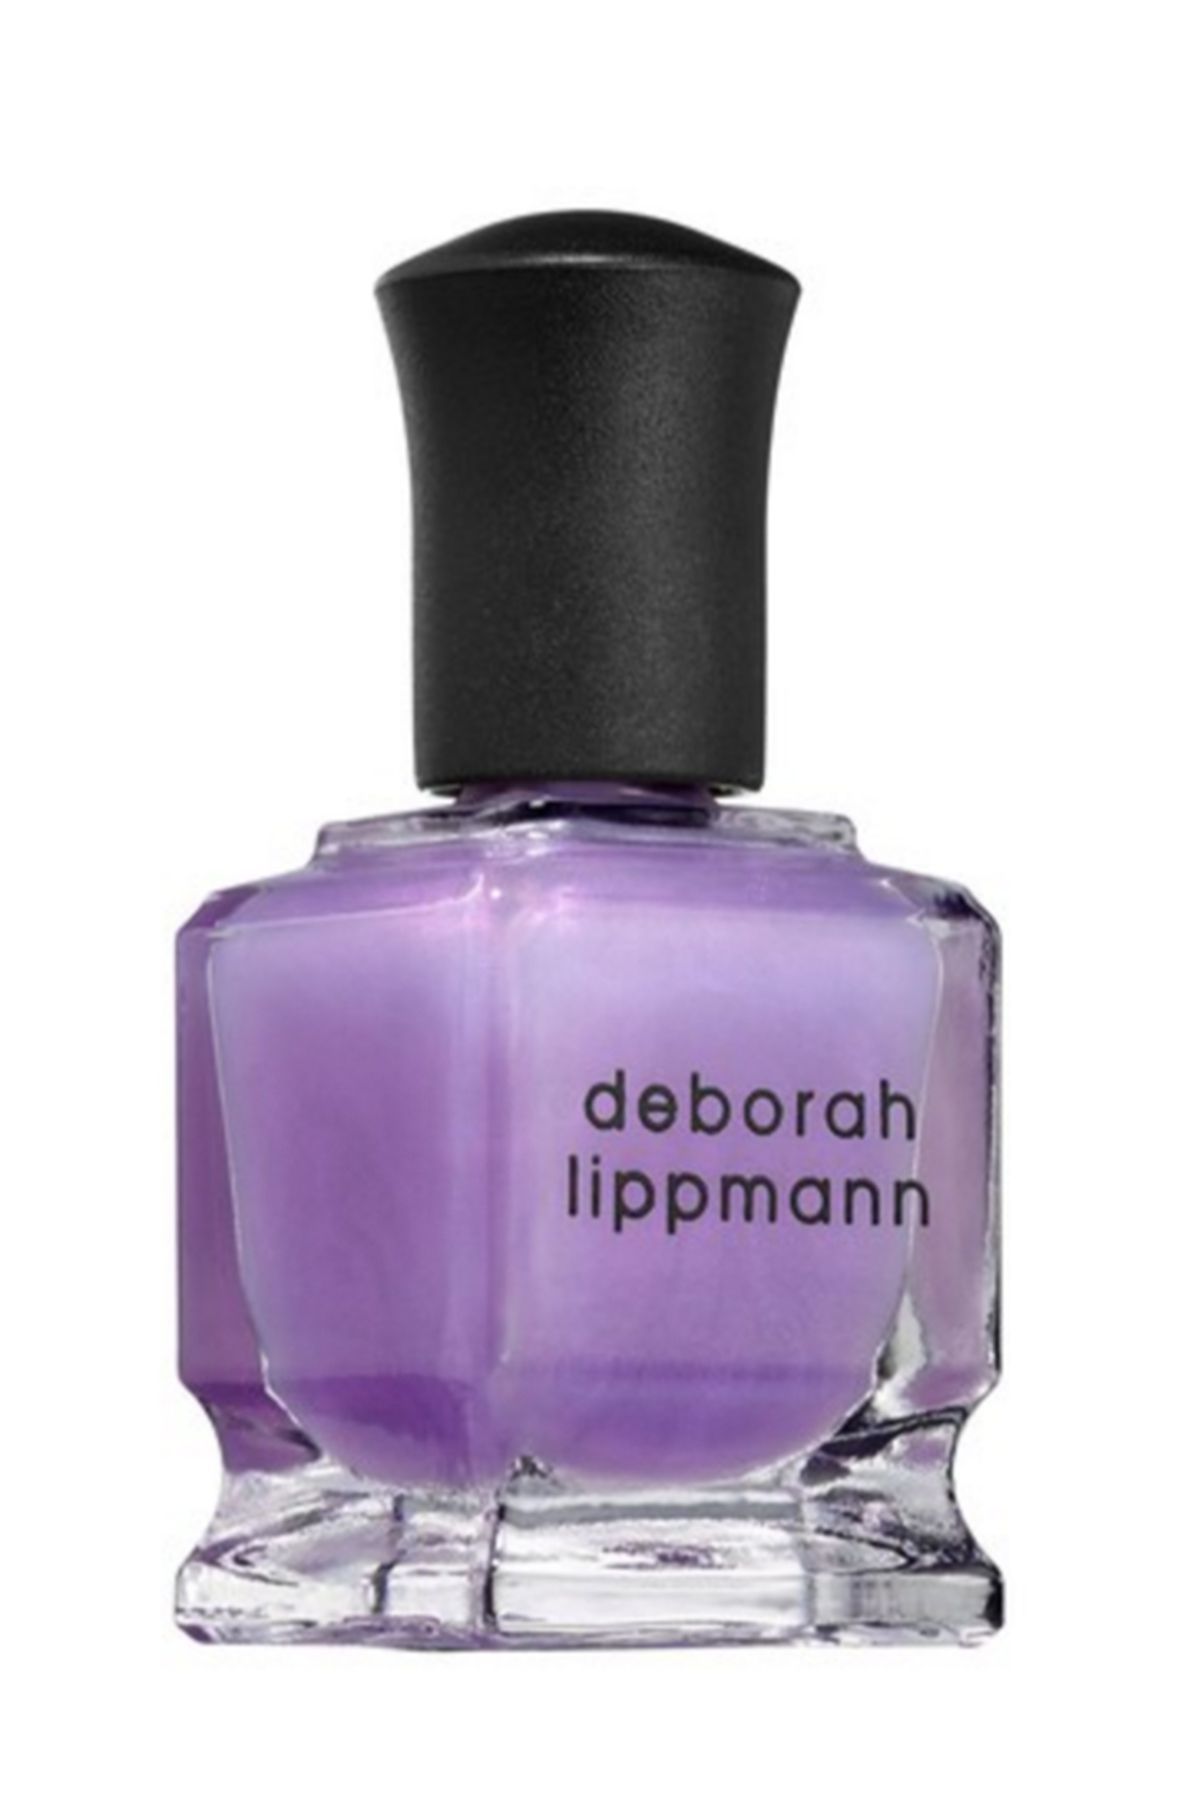 Deborah Lippmann "Genie In A Bottle" 